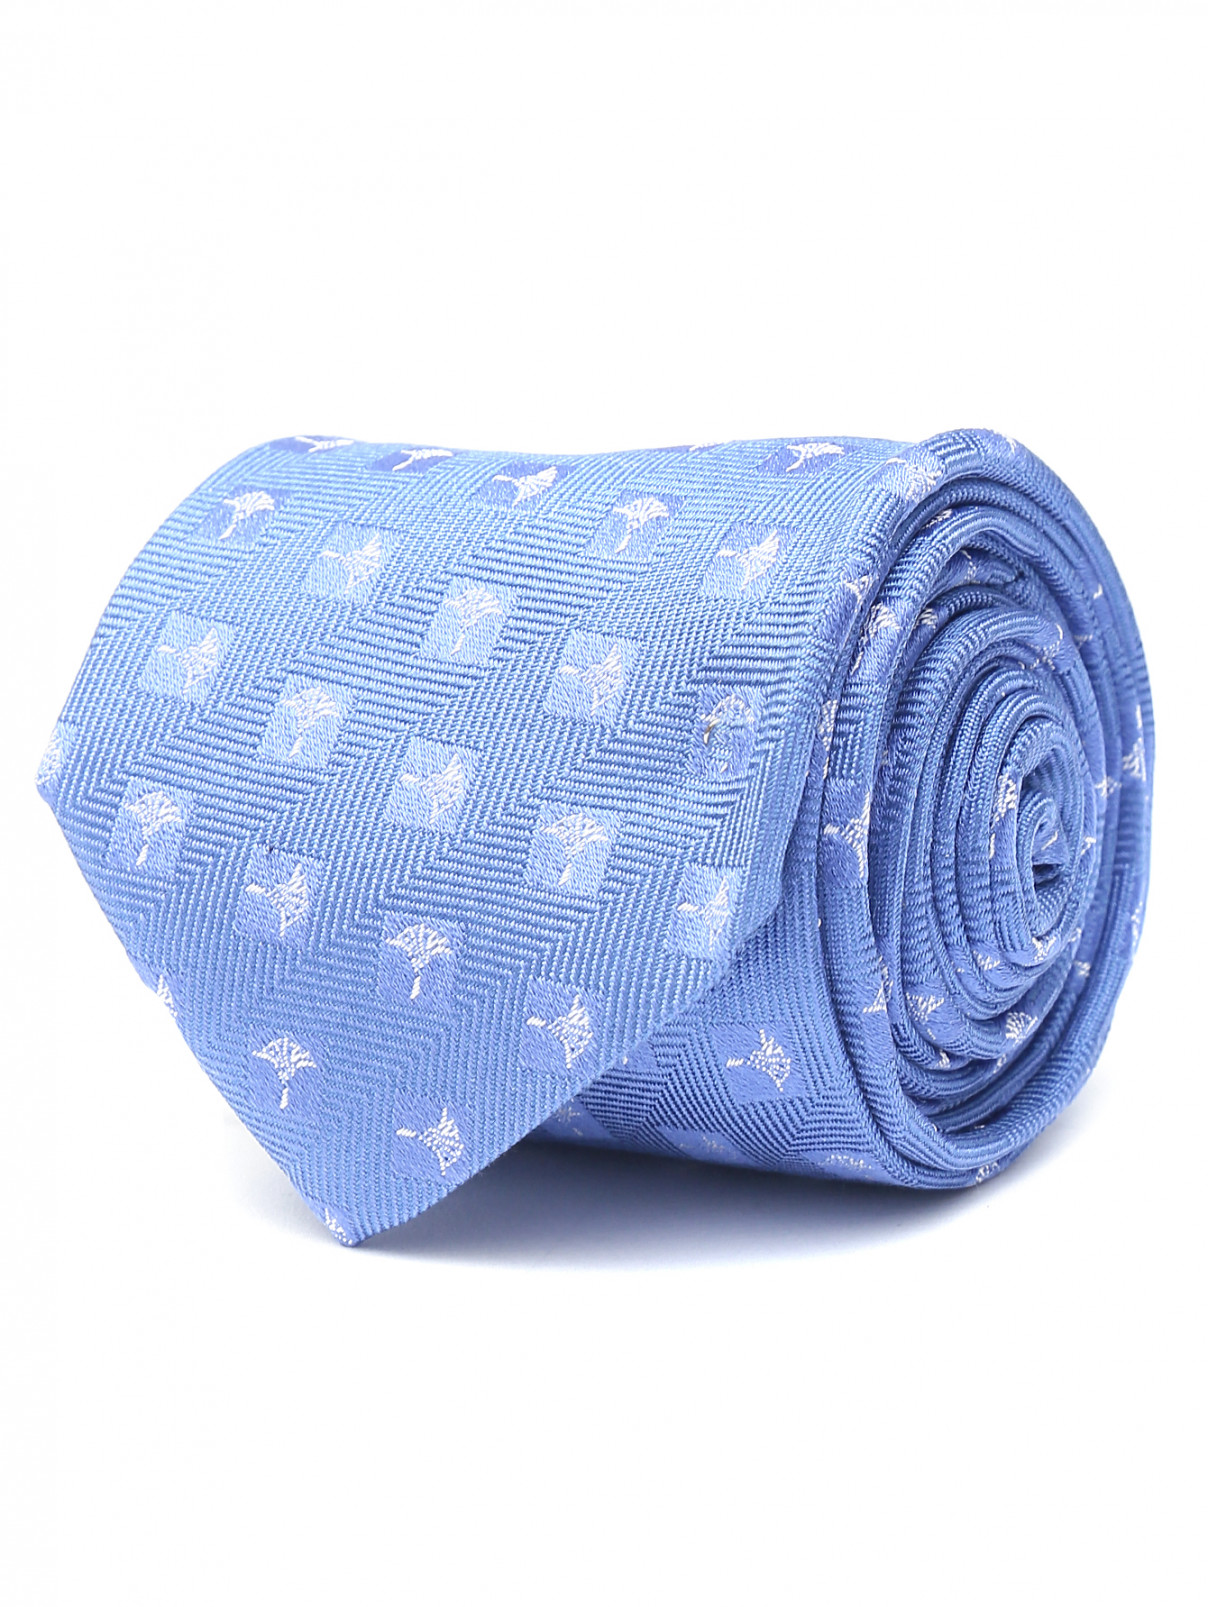 Галстук из шелка с узором Joop  –  Общий вид  – Цвет:  Синий